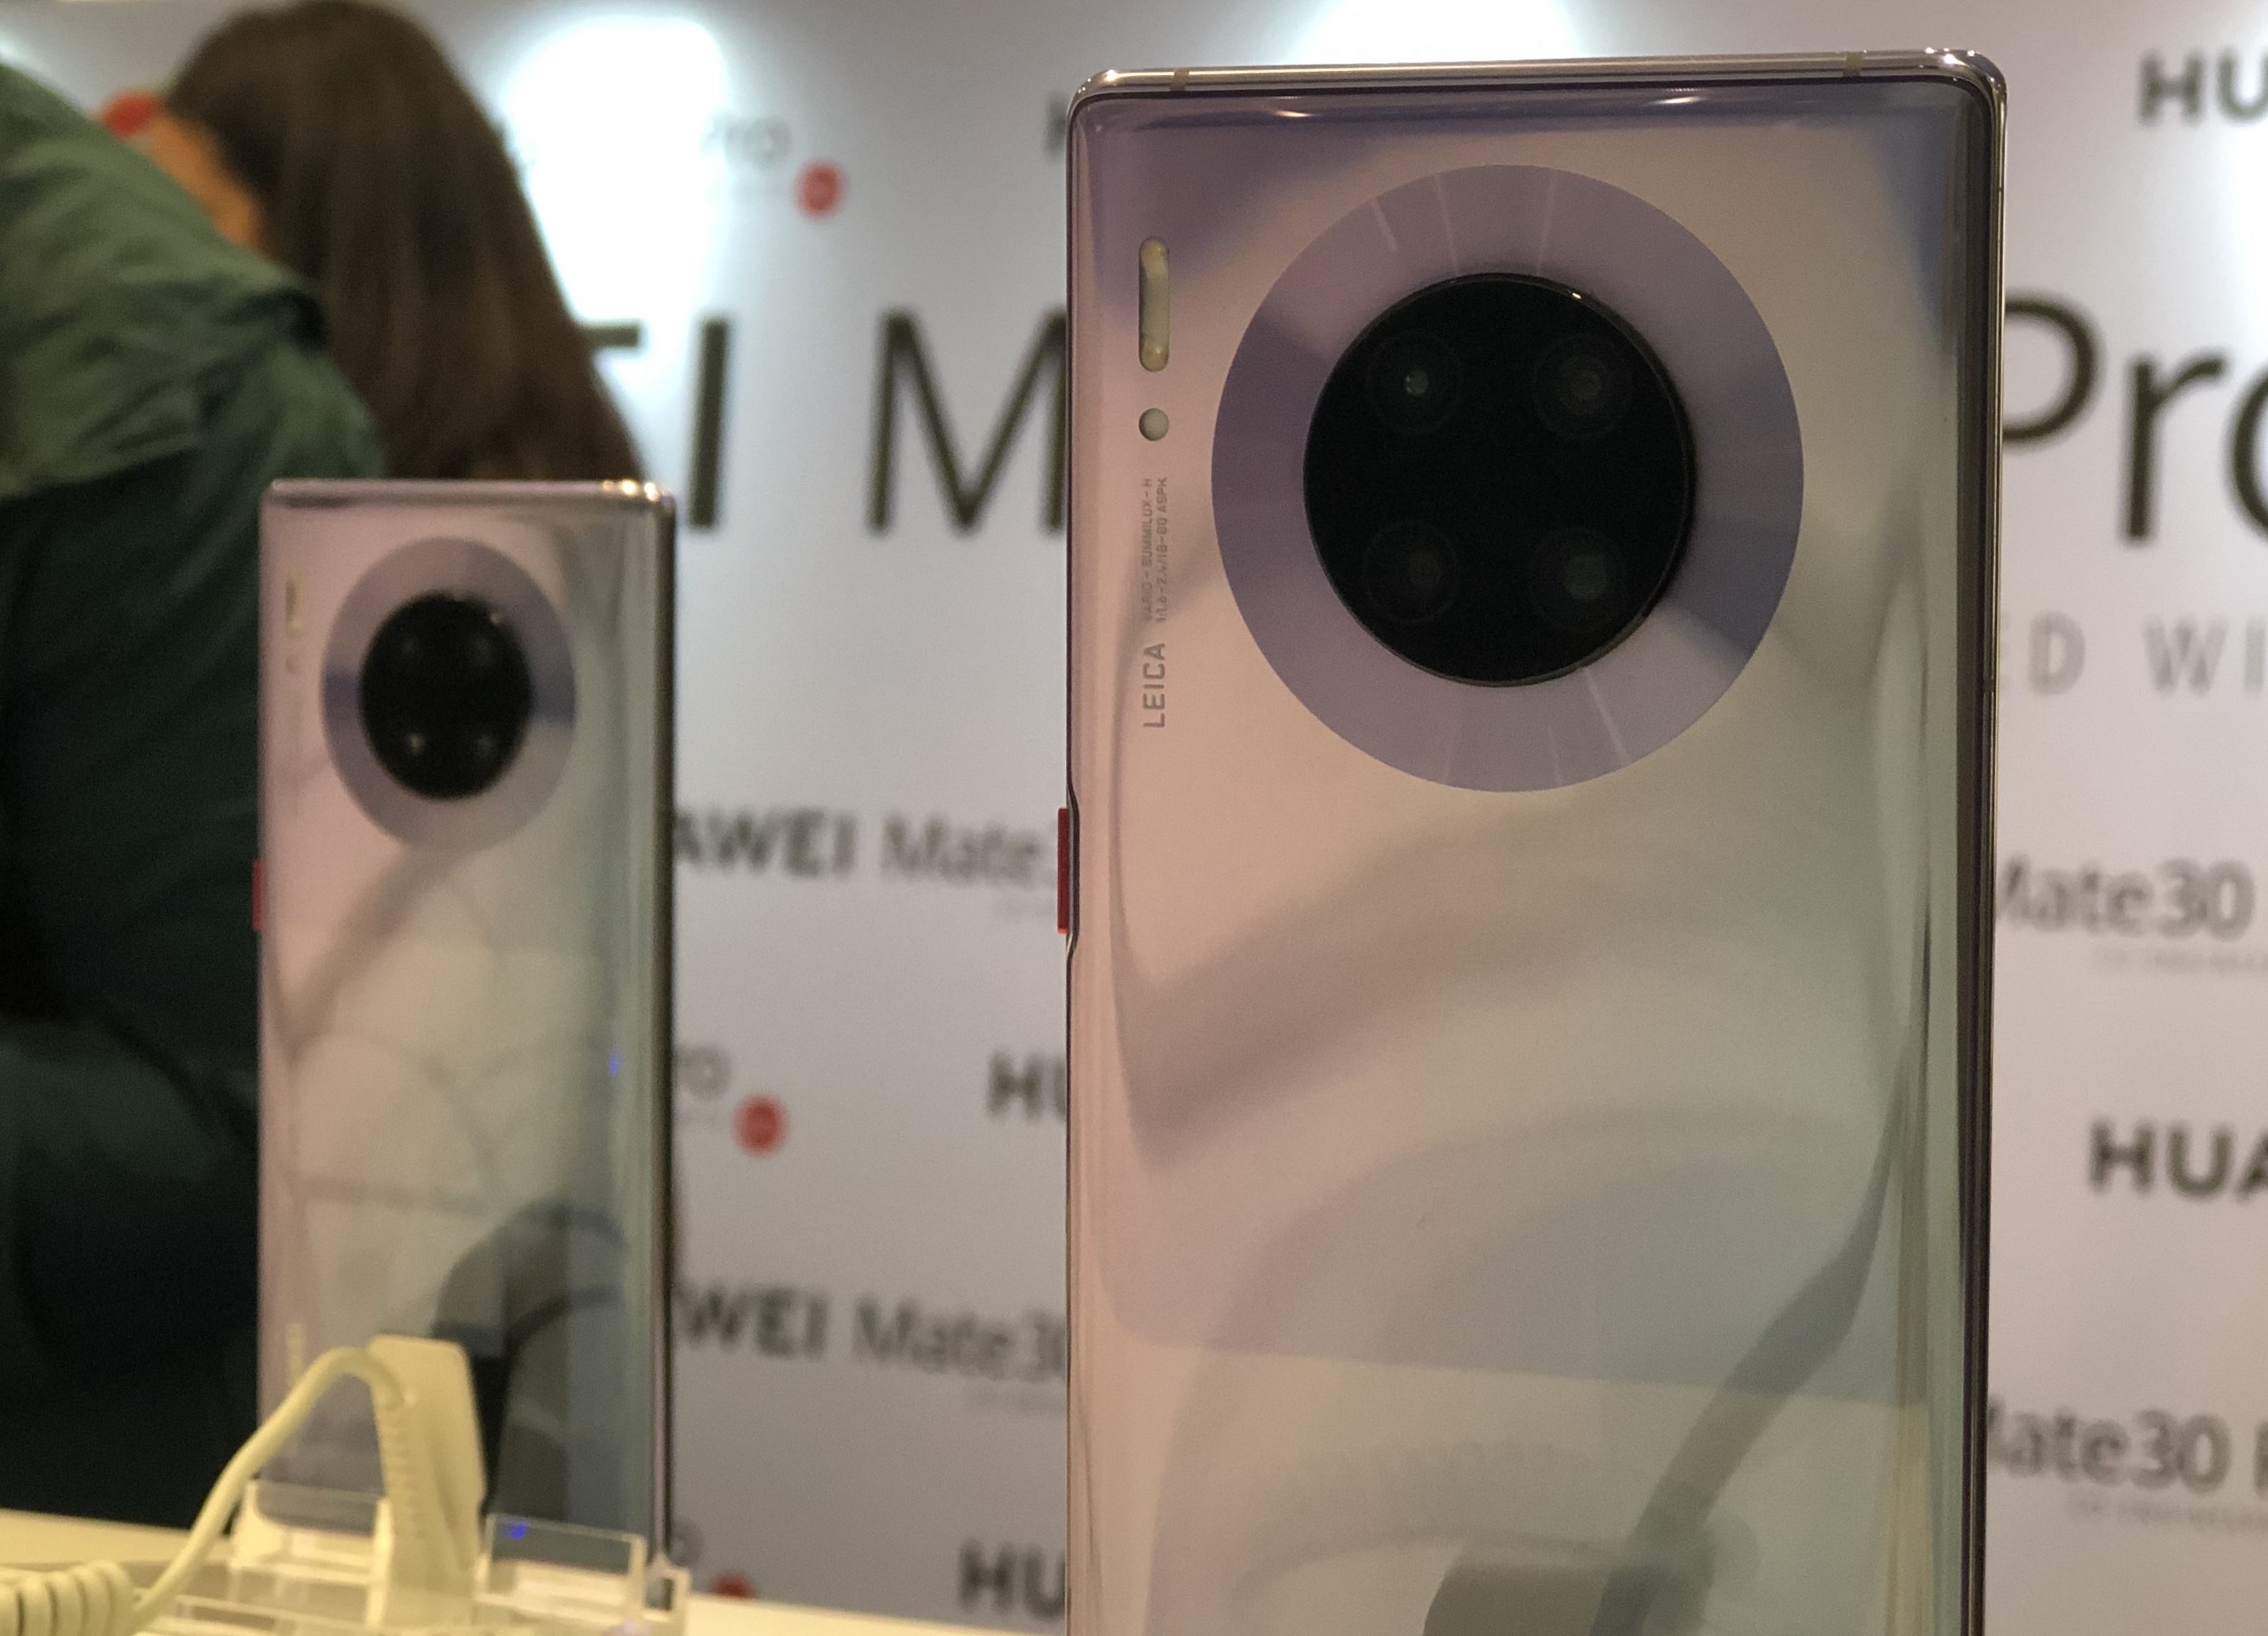 Kalau Pakai Huawei Mate 30 Pro, Bisa Medsos dan Pesan Ojol Gak Sih?